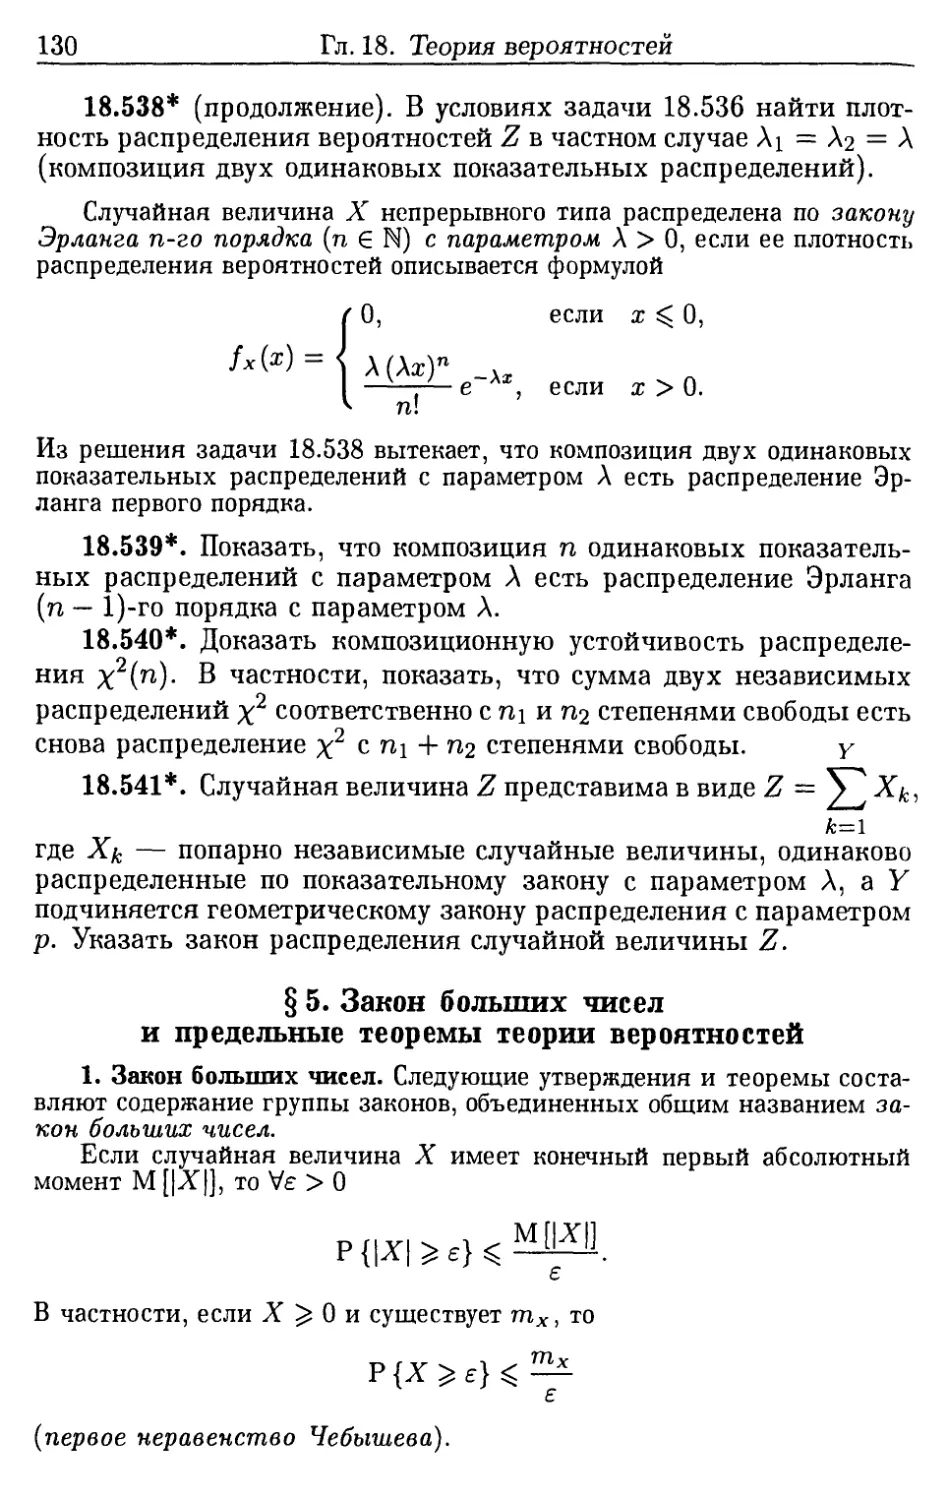 §5. Закон больших чисел и предельные теоремы теории вероятностей